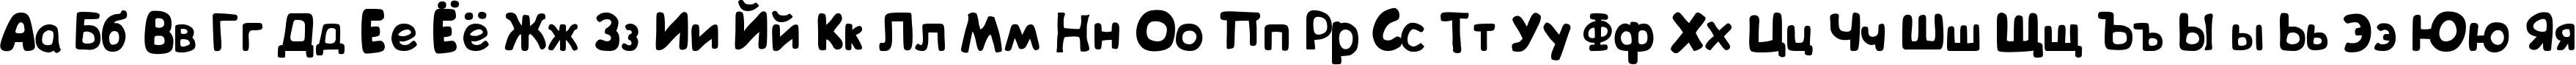 Пример написания русского алфавита шрифтом BIP